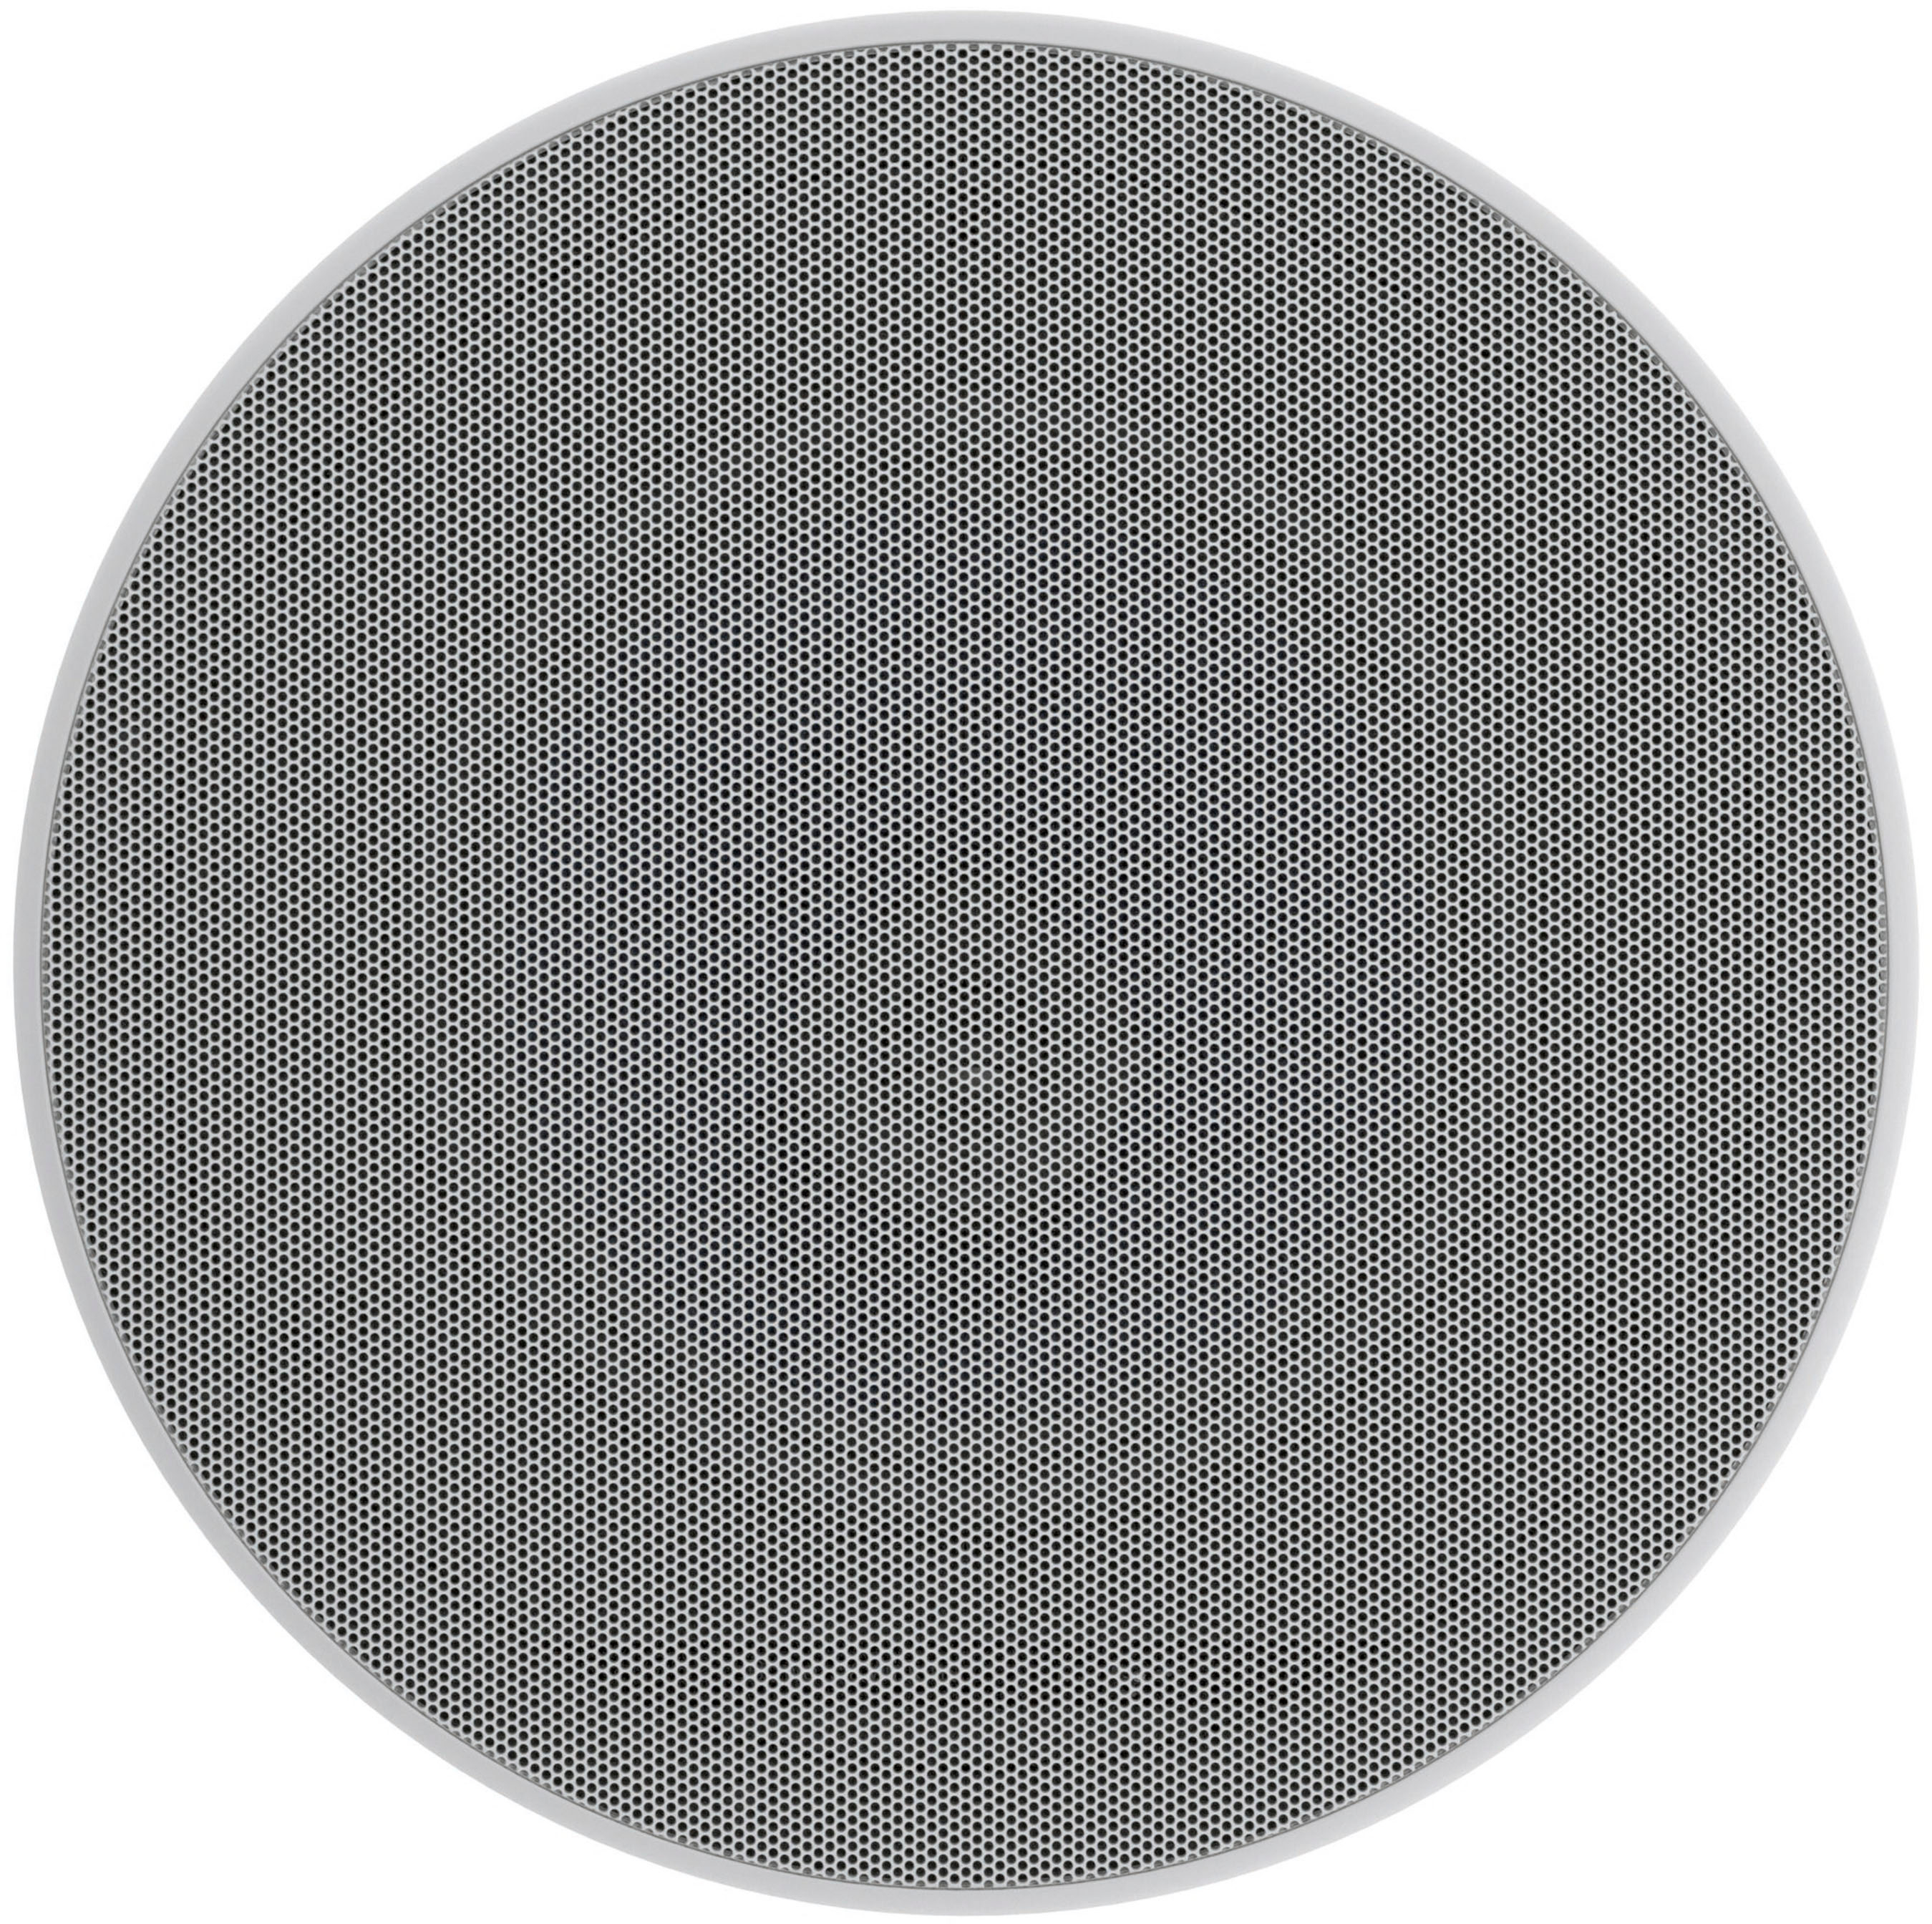 Bowers & Wilkins - 8" 2-Way Round In-Ceiling Speakers (Pair) - White/Black